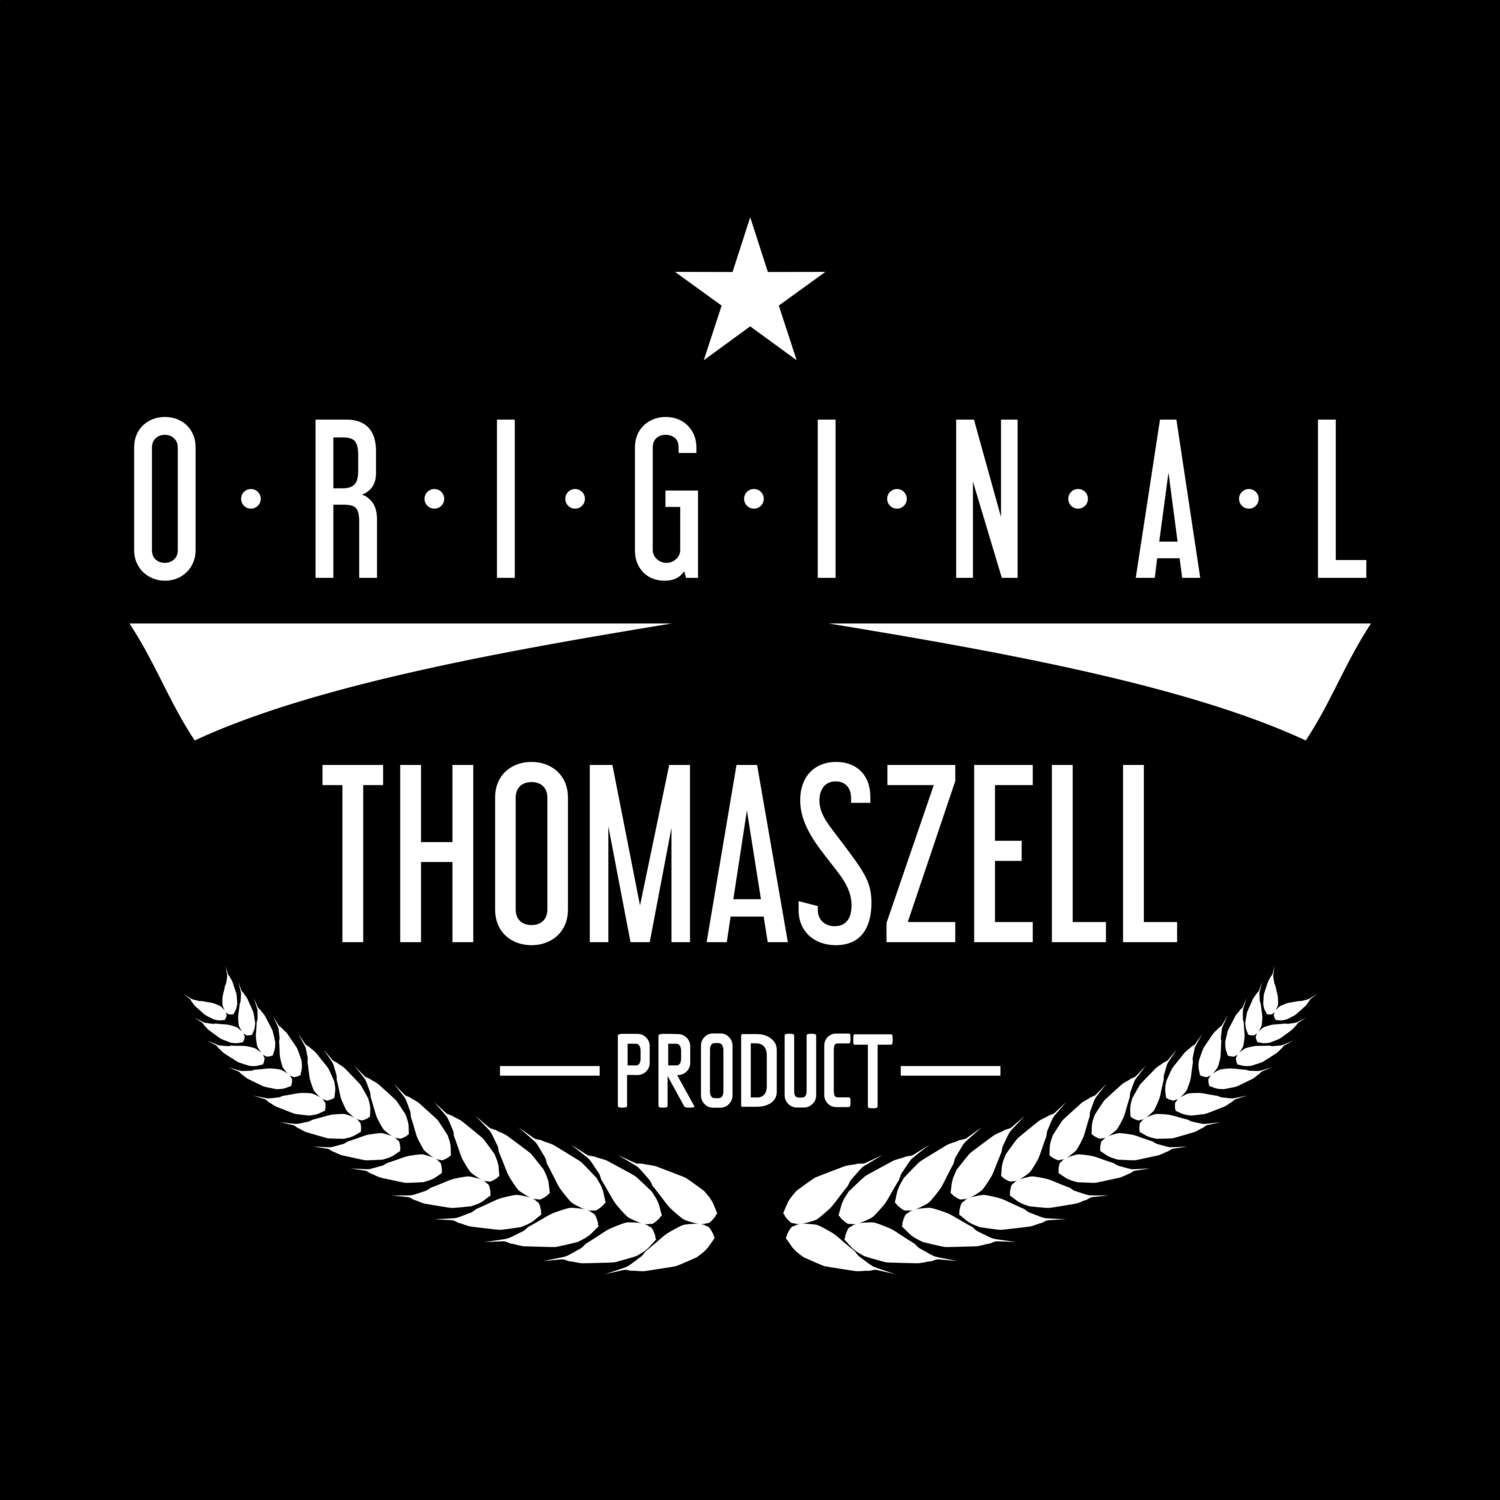 Thomaszell T-Shirt »Original Product«